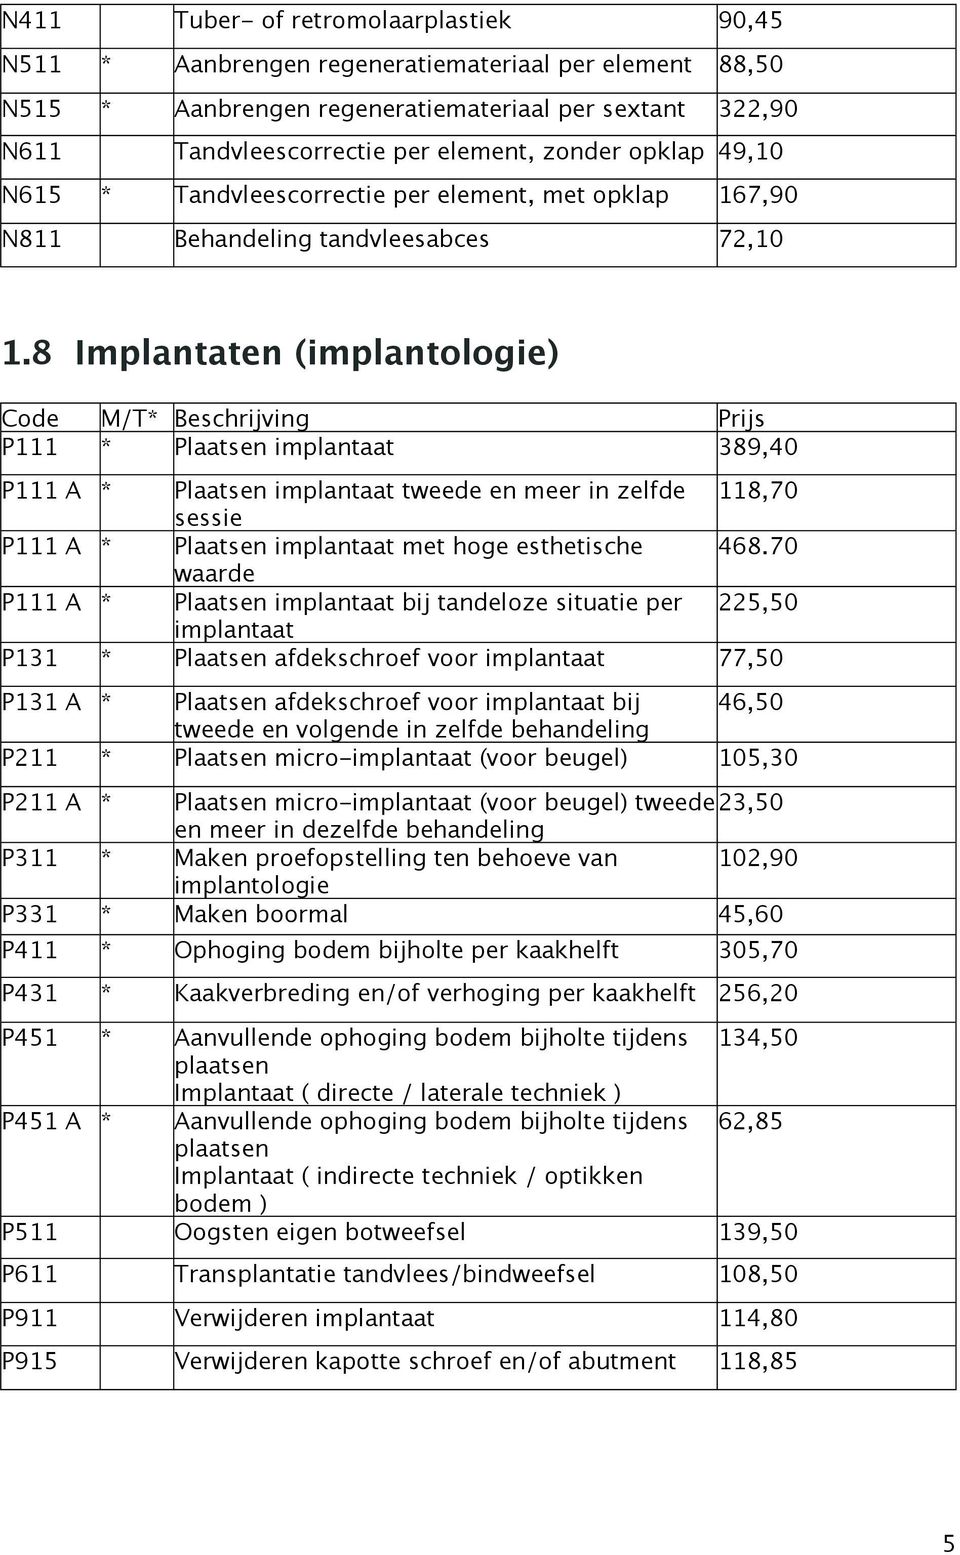 8 Implantaten (implantologie) P111 * Plaatsen implantaat 389,40 P111 A * Plaatsen implantaat tweede en meer in zelfde 118,70 sessie P111 A * Plaatsen implantaat met hoge esthetische 468.